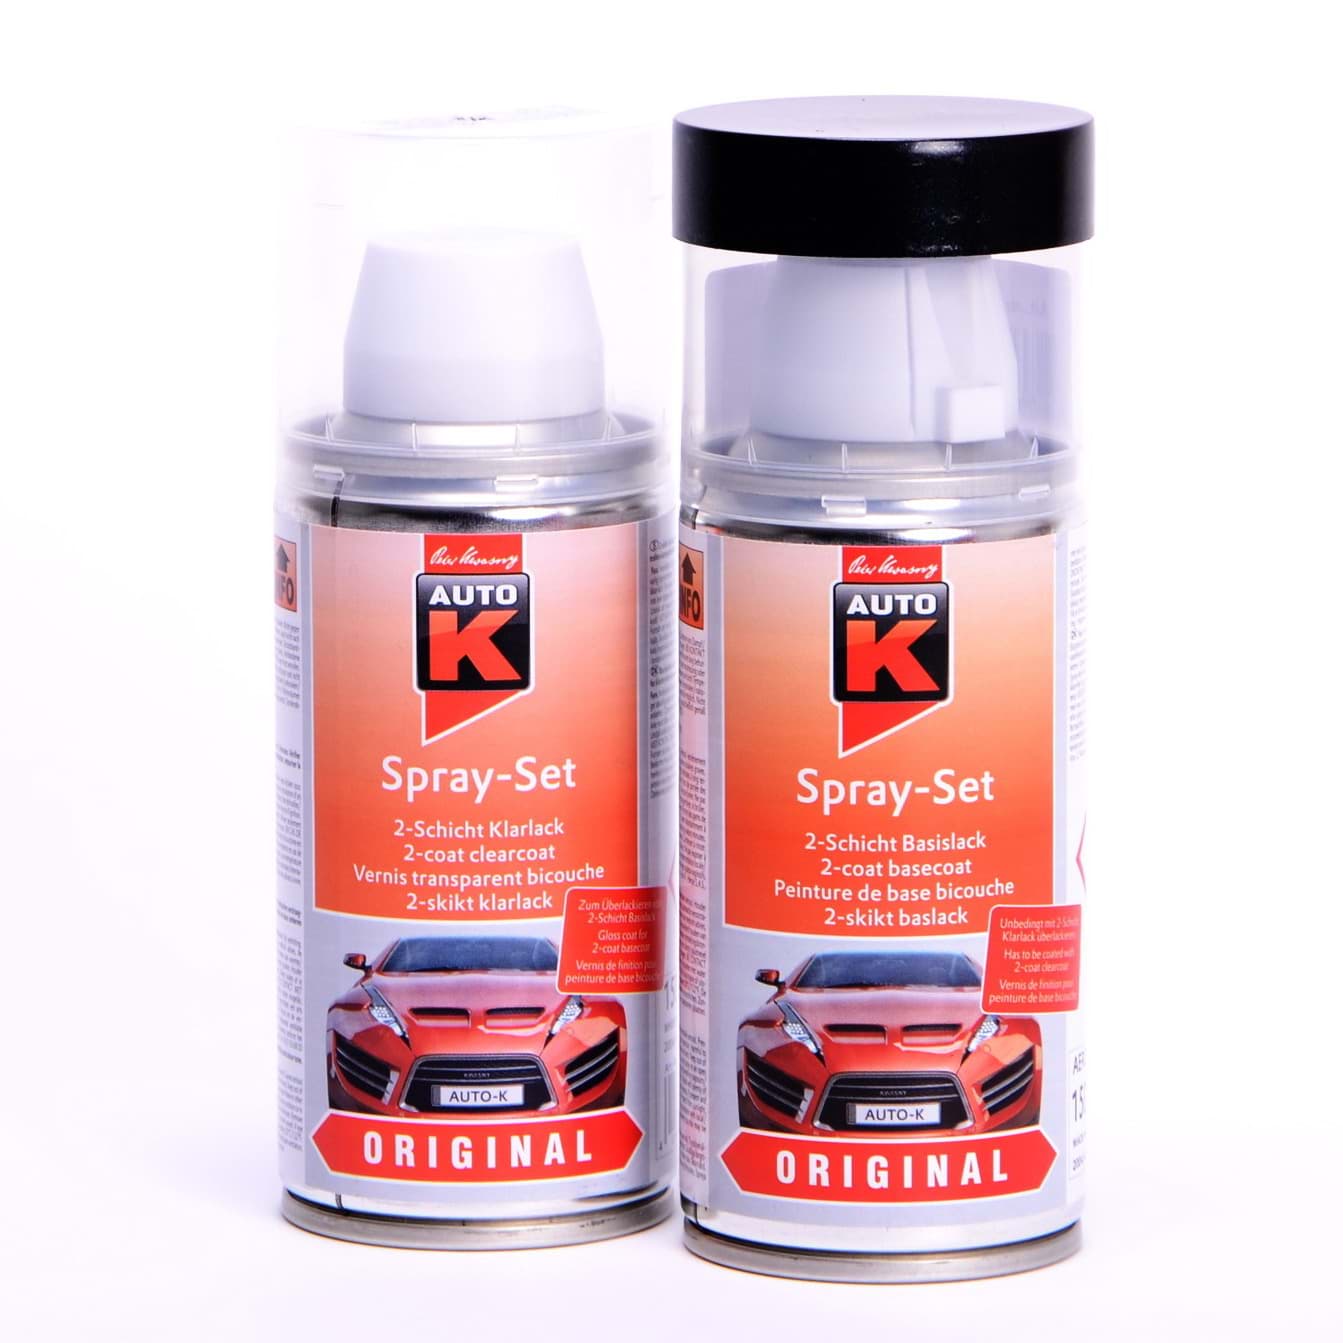 Afbeelding van Auto-K Spray-Set Autolack für Ford Schwarz AAP 22369